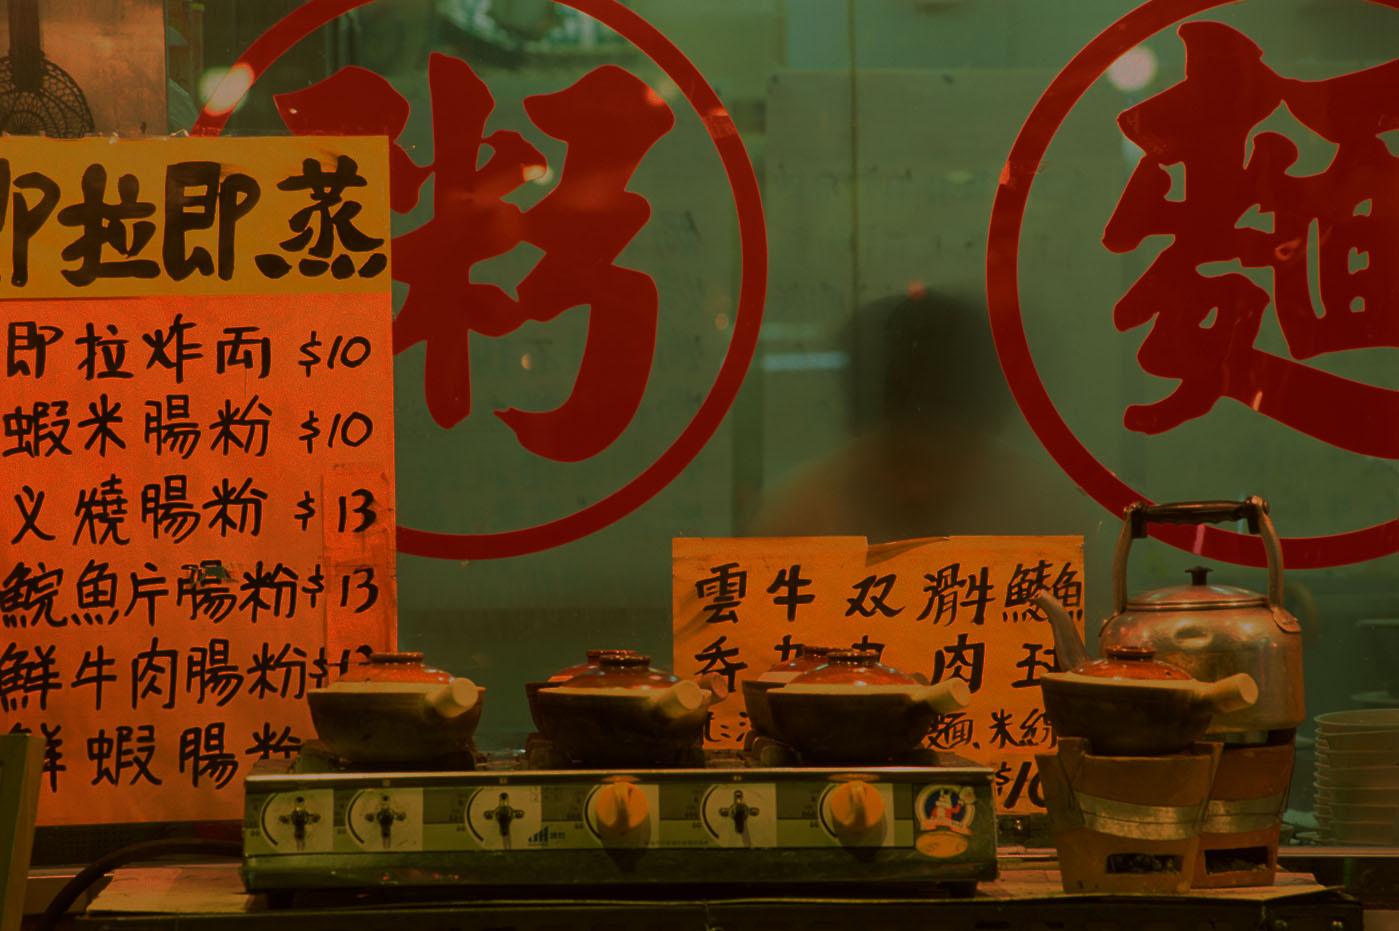 Kinesisk restaurant med tegn på kinesisk.